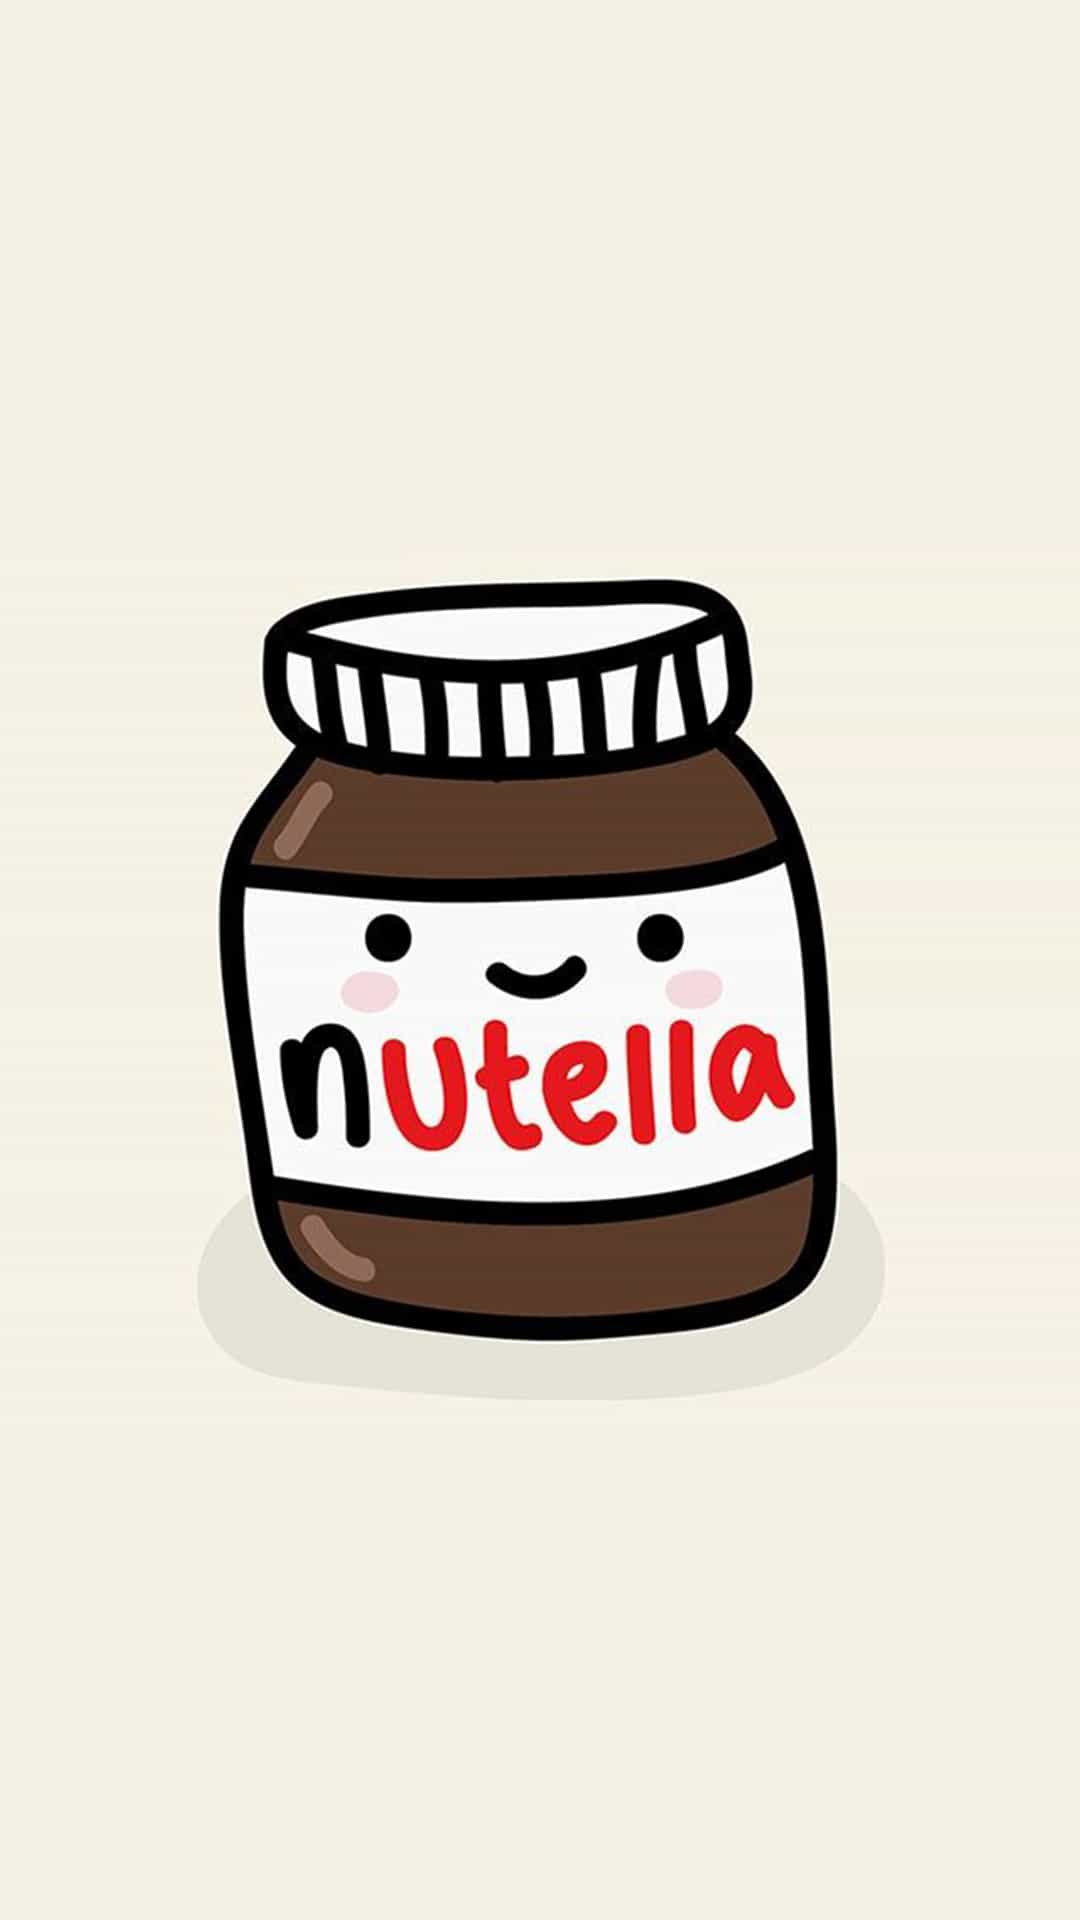 cute-nutella-jar-illustration-android-wallpaper